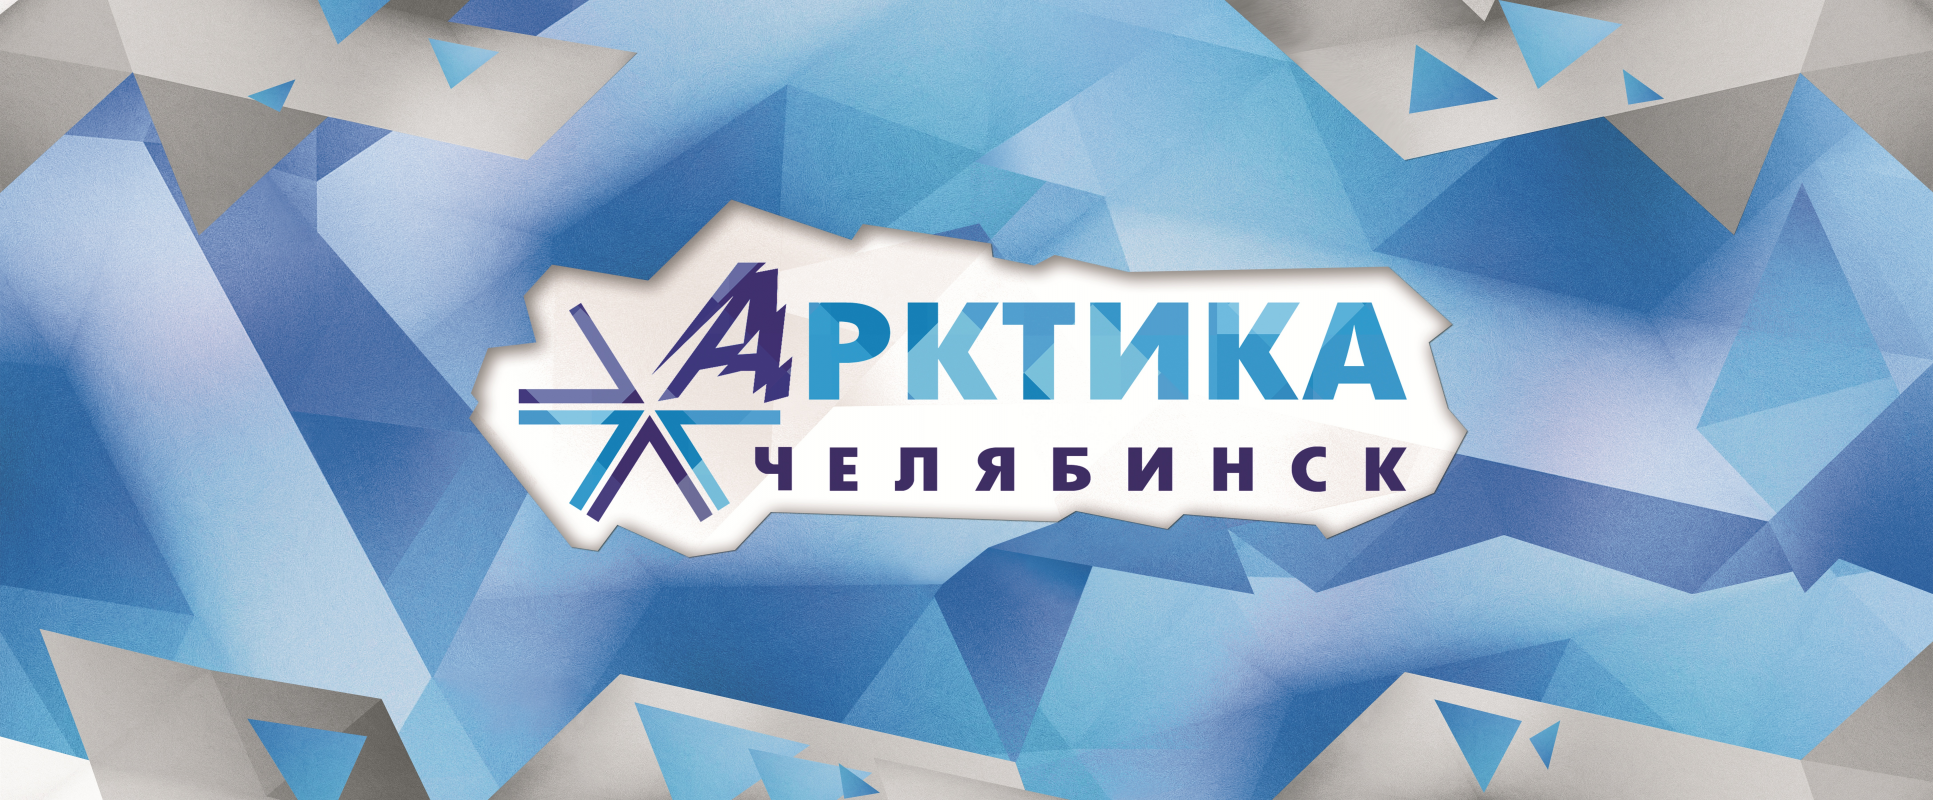 Арктика-Челябинск: отзывы от сотрудников и партнеров